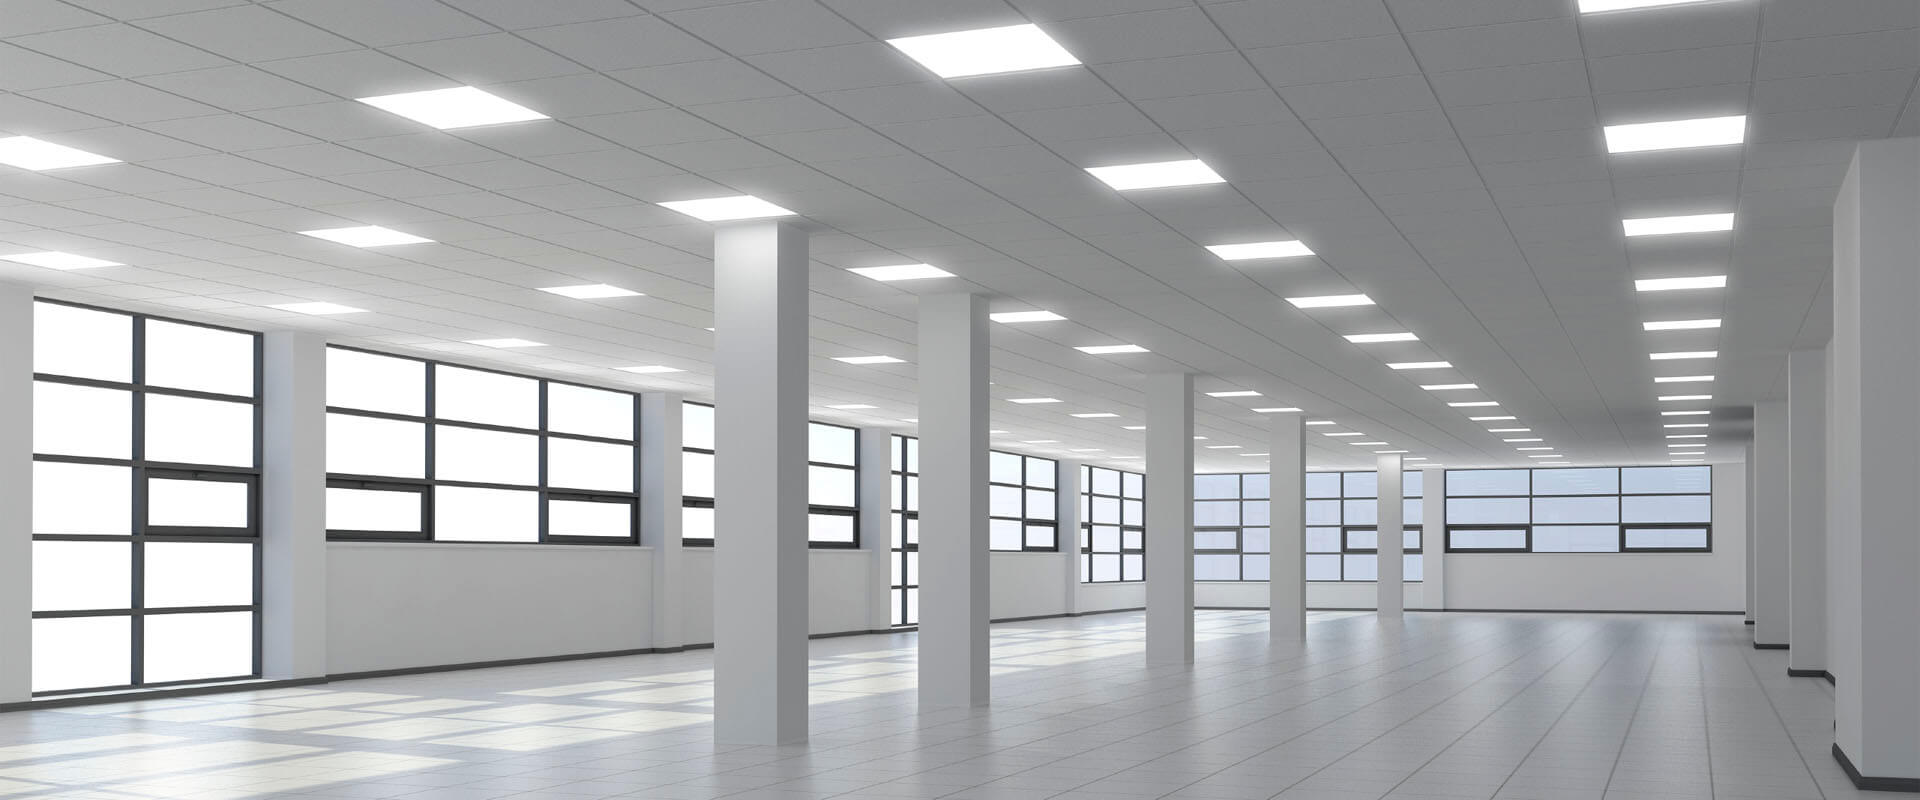 محاسبه روشنایی ساختمان محاسبه روشنایی ساختمان Commercial LED Lighting Retrofit